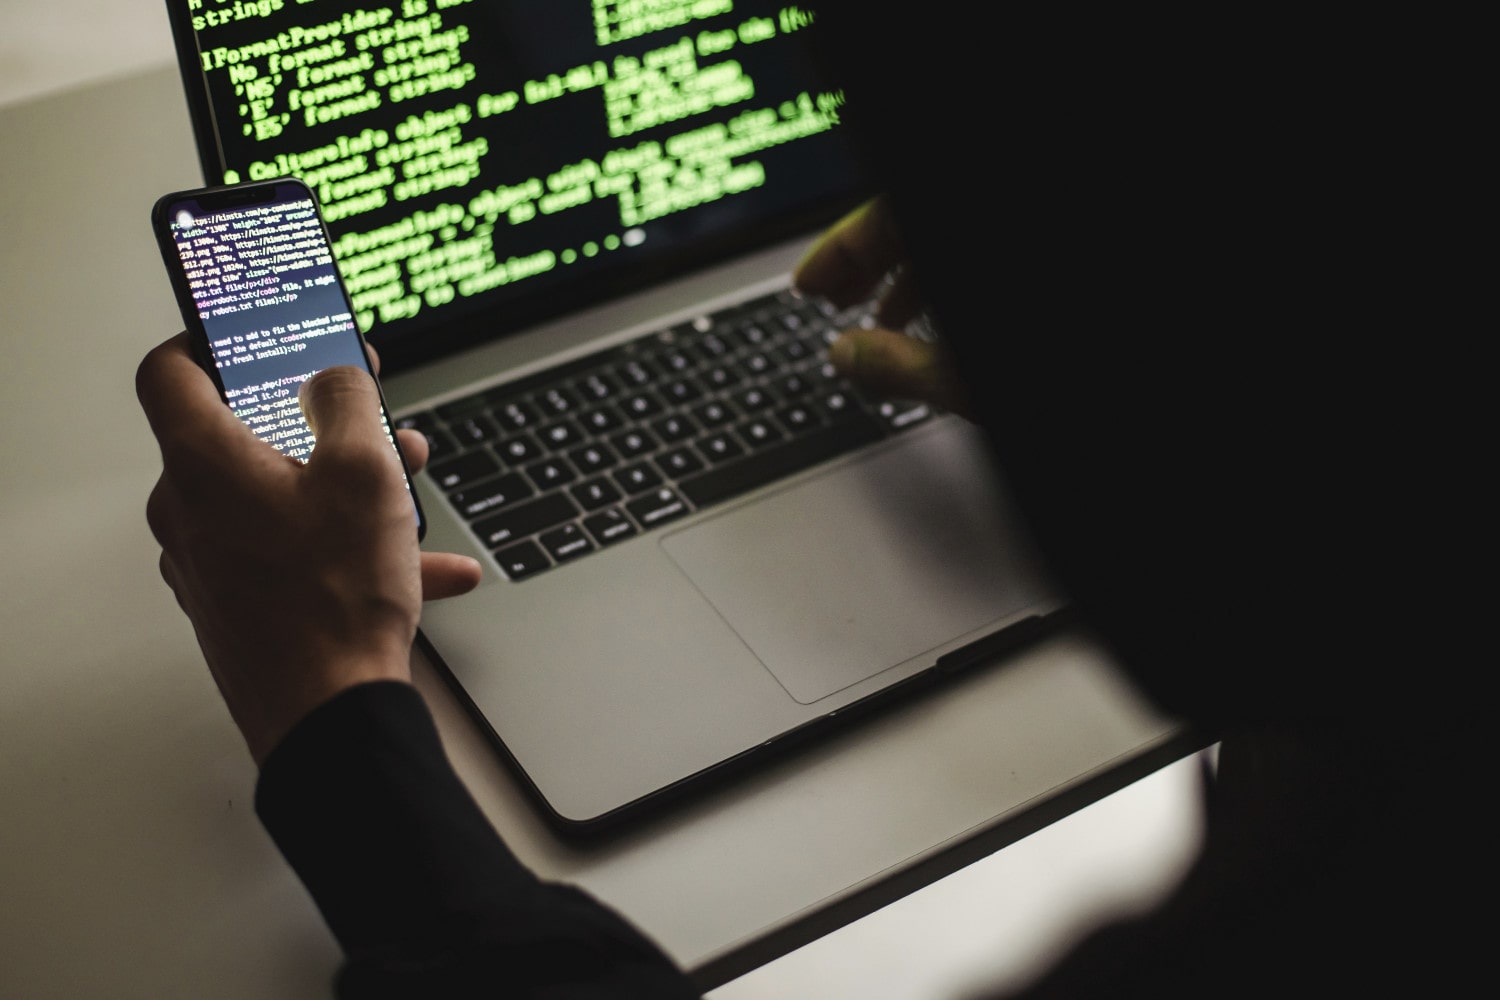 Un hacker escribiendo en una computadora portátil Apple MacBook mientras sostiene un teléfono. Ambos dispositivos muestran código en sus pantallas.